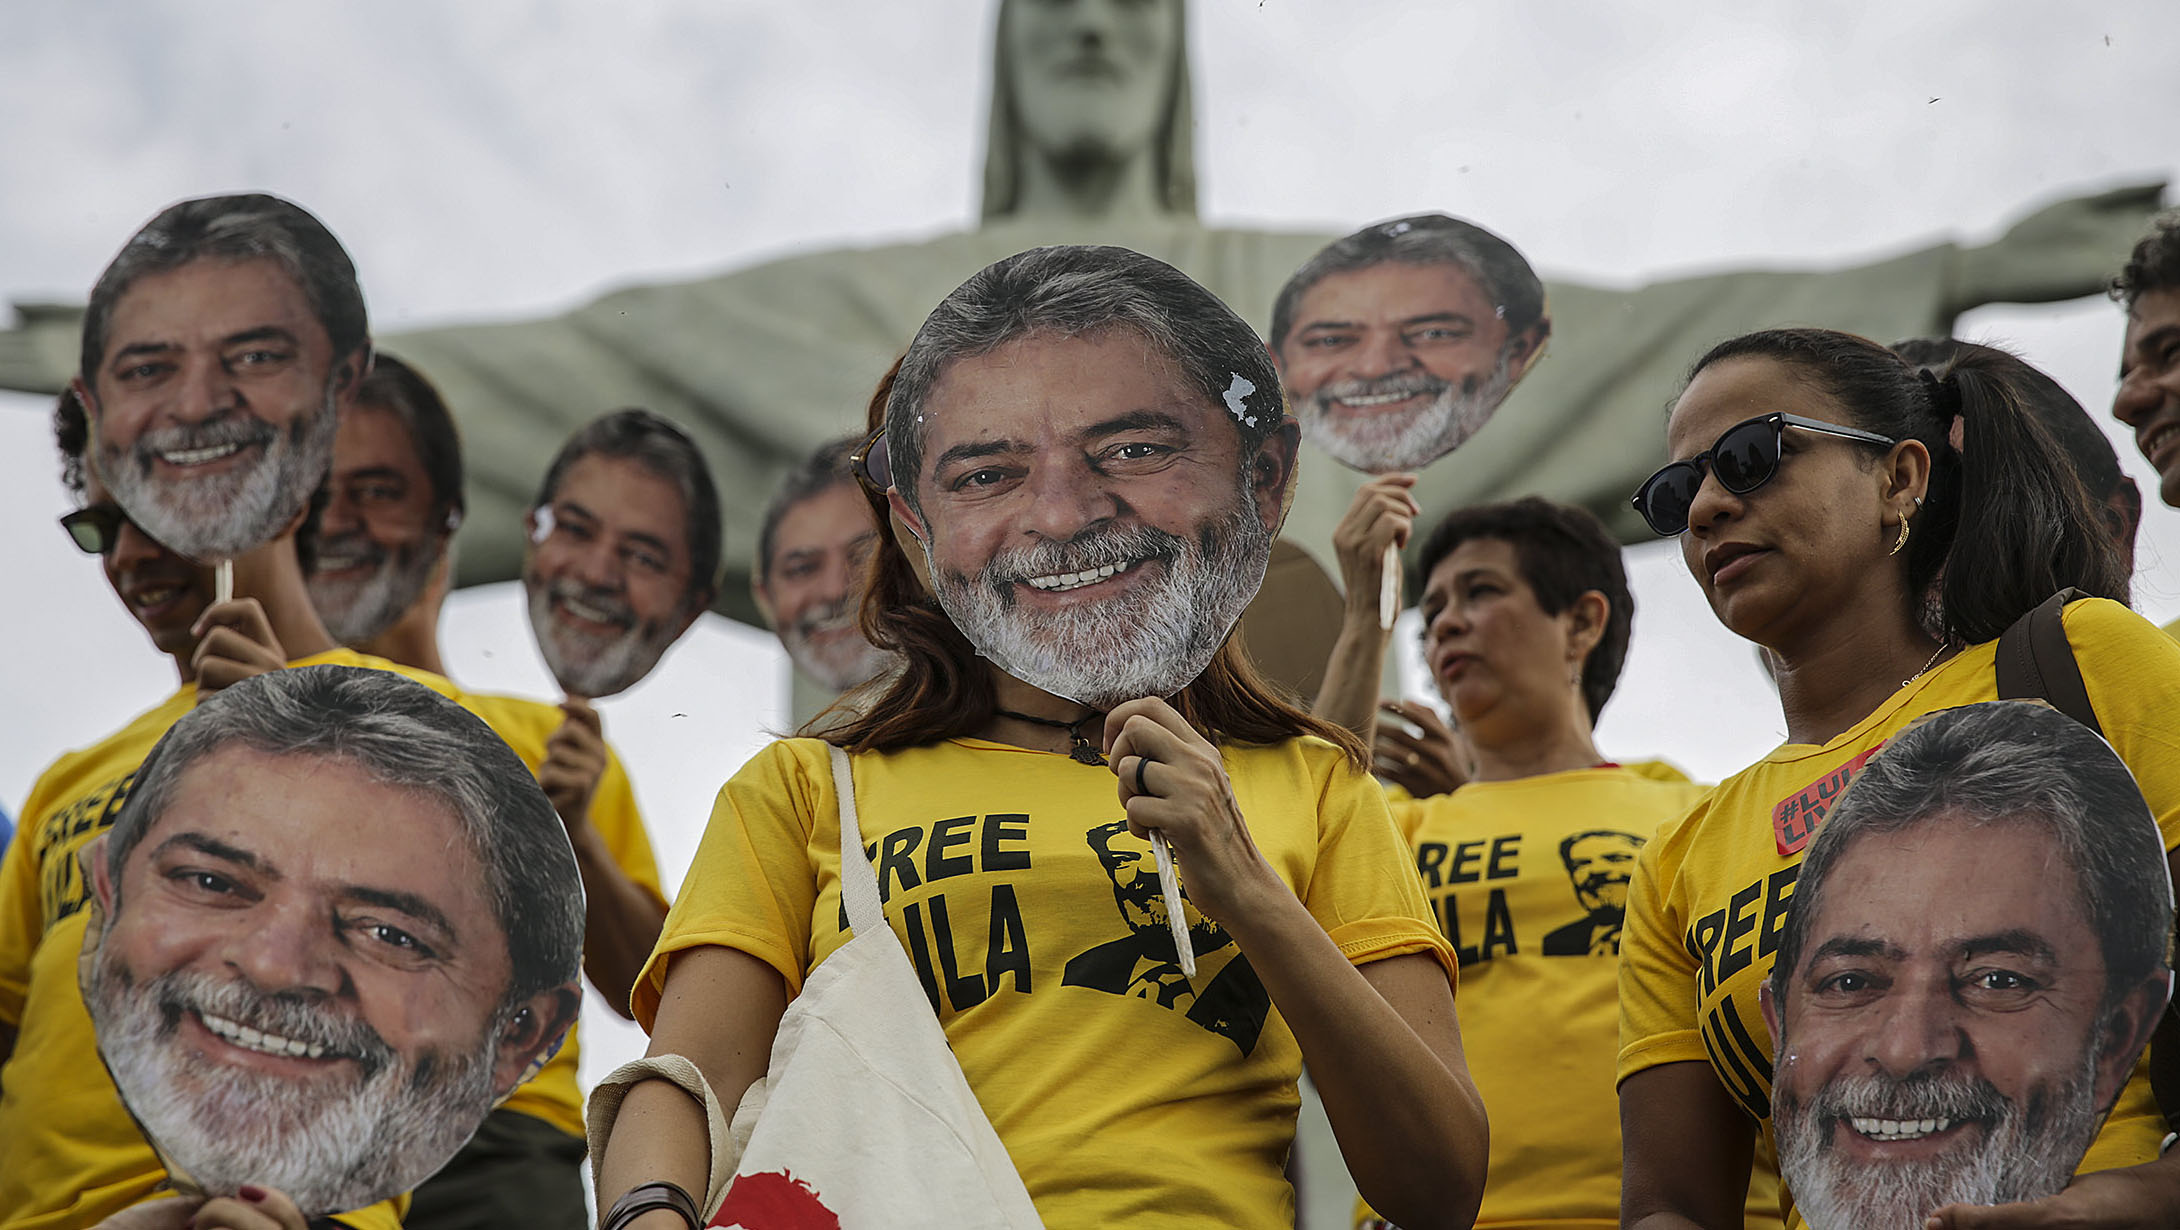 El líder brasileño pidió a quienes lo apoyan que sigan en la lucha contra la injusticia en Brasil.